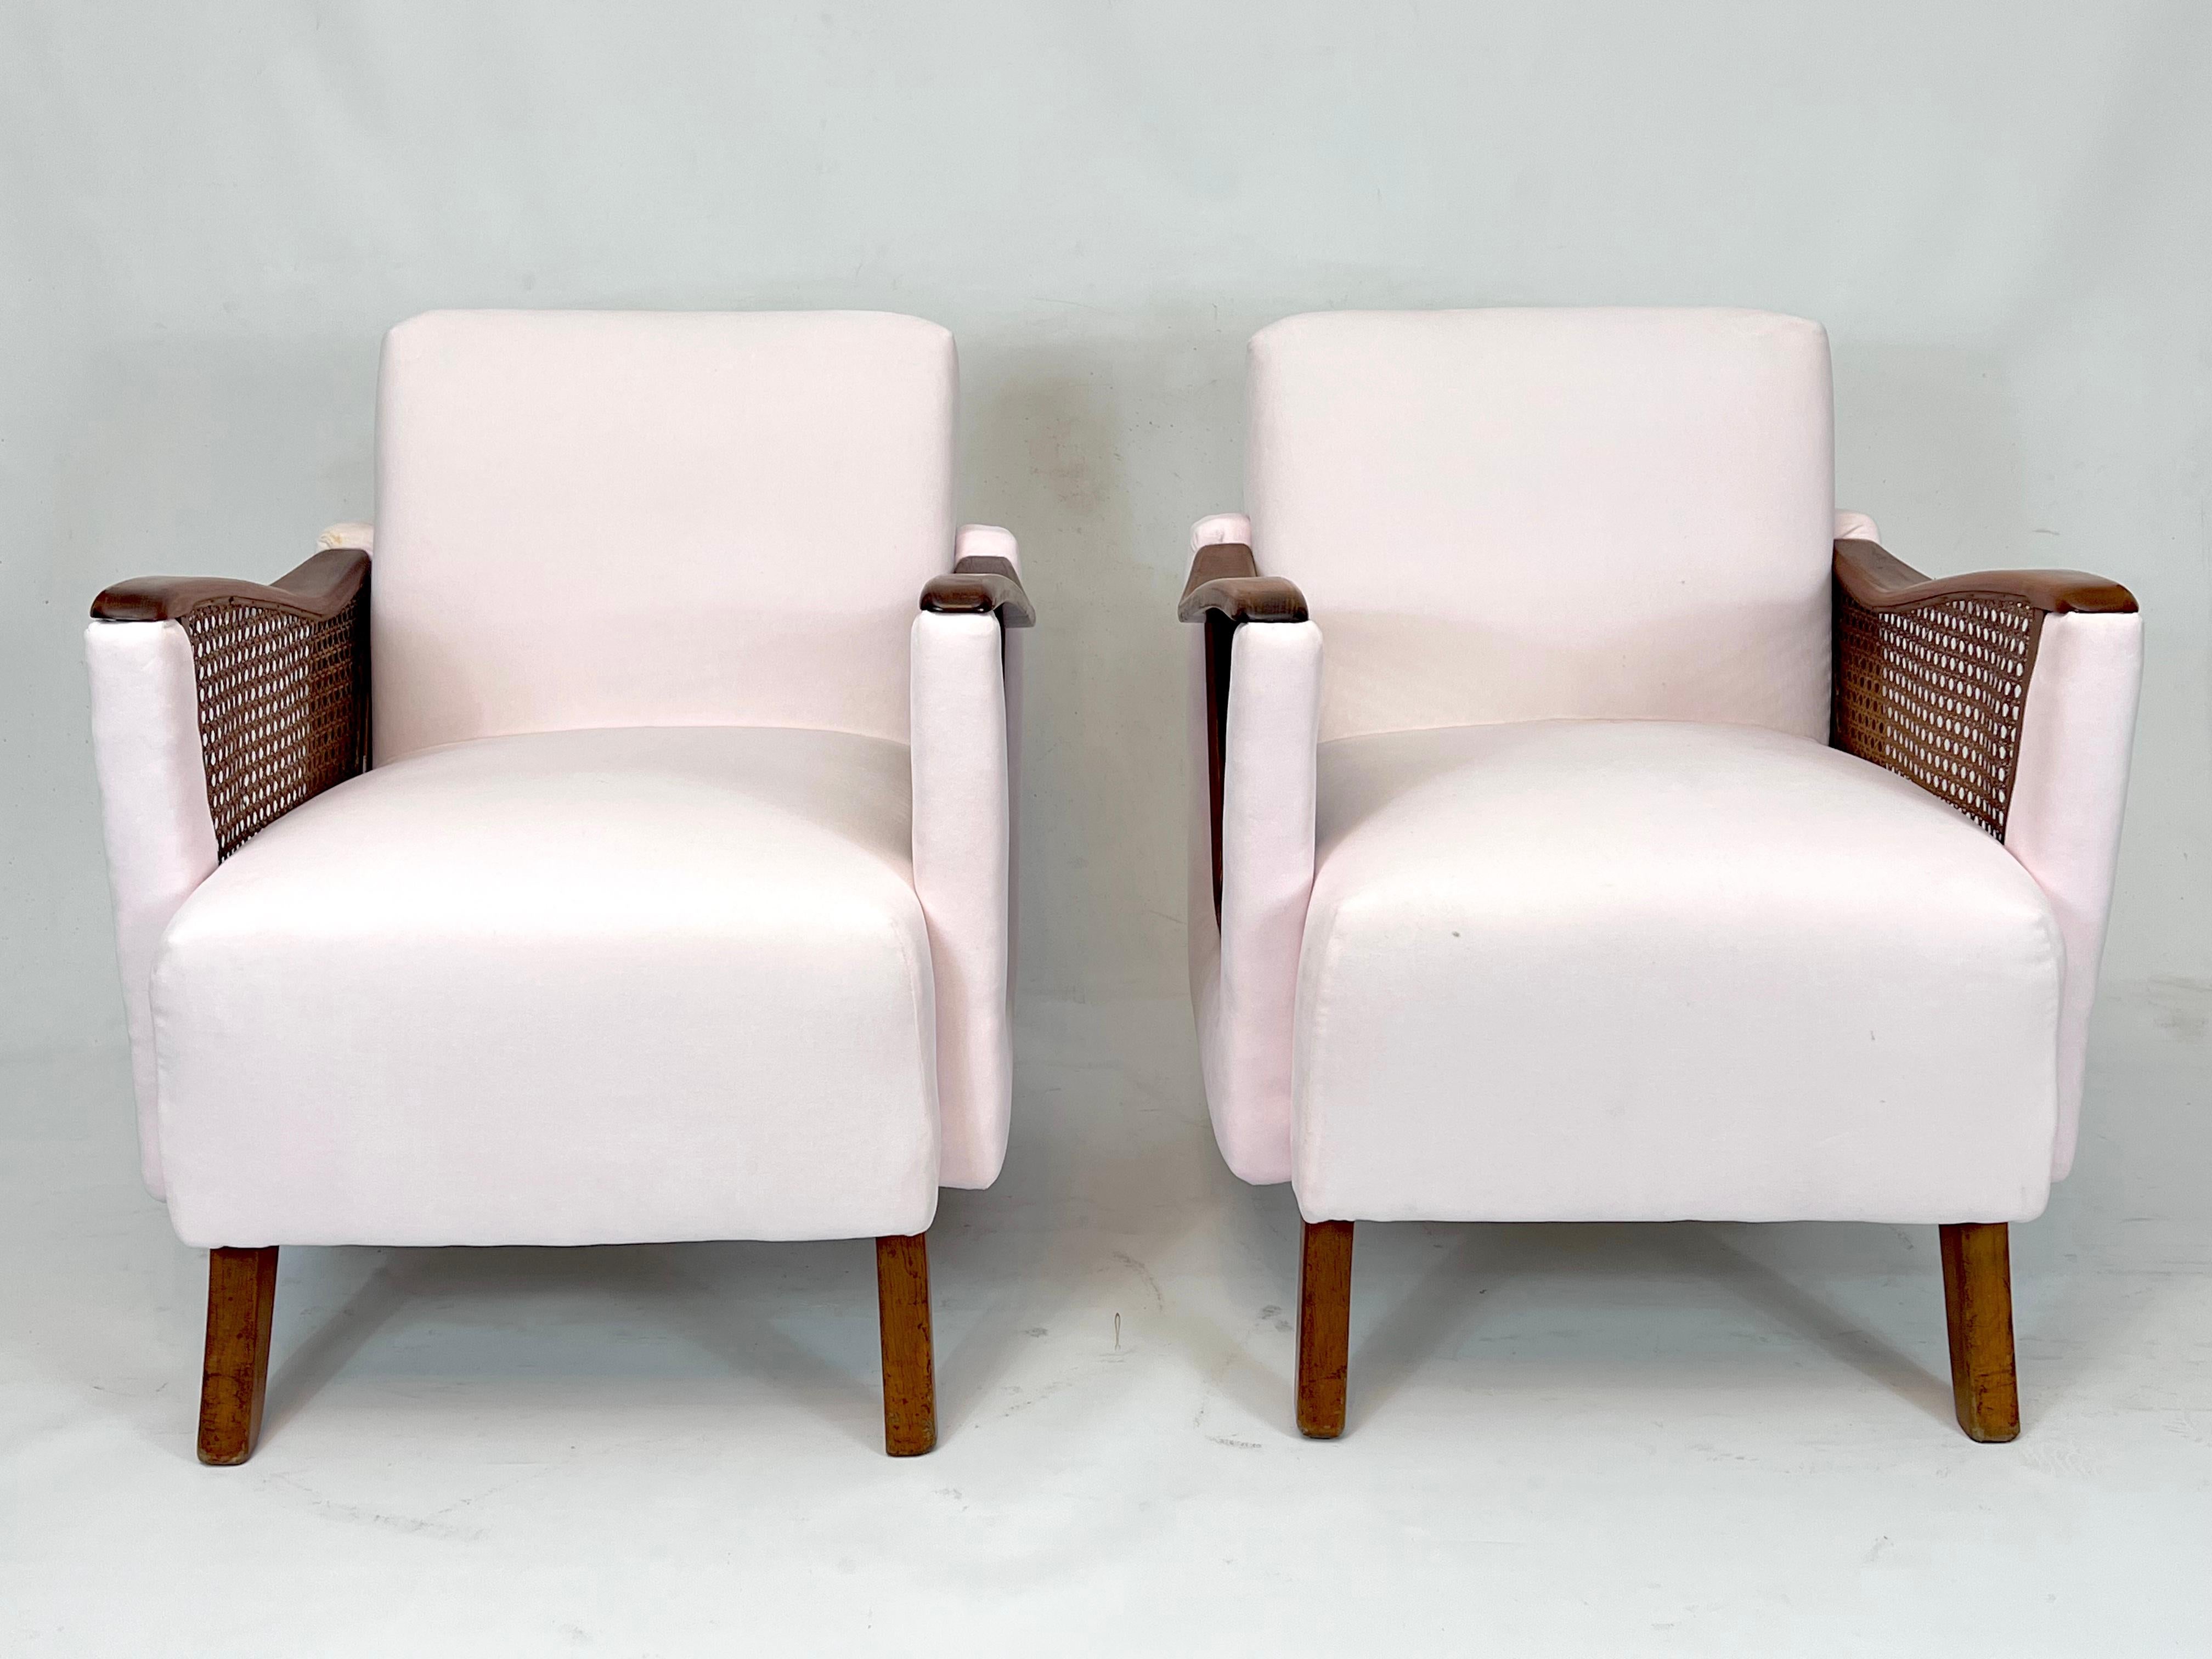 Ensemble de deux fauteuils en velours rose vif, bois et rotin en très bon état général. Rembourré en velours de coton fin. Produit en Italie dans les années 50